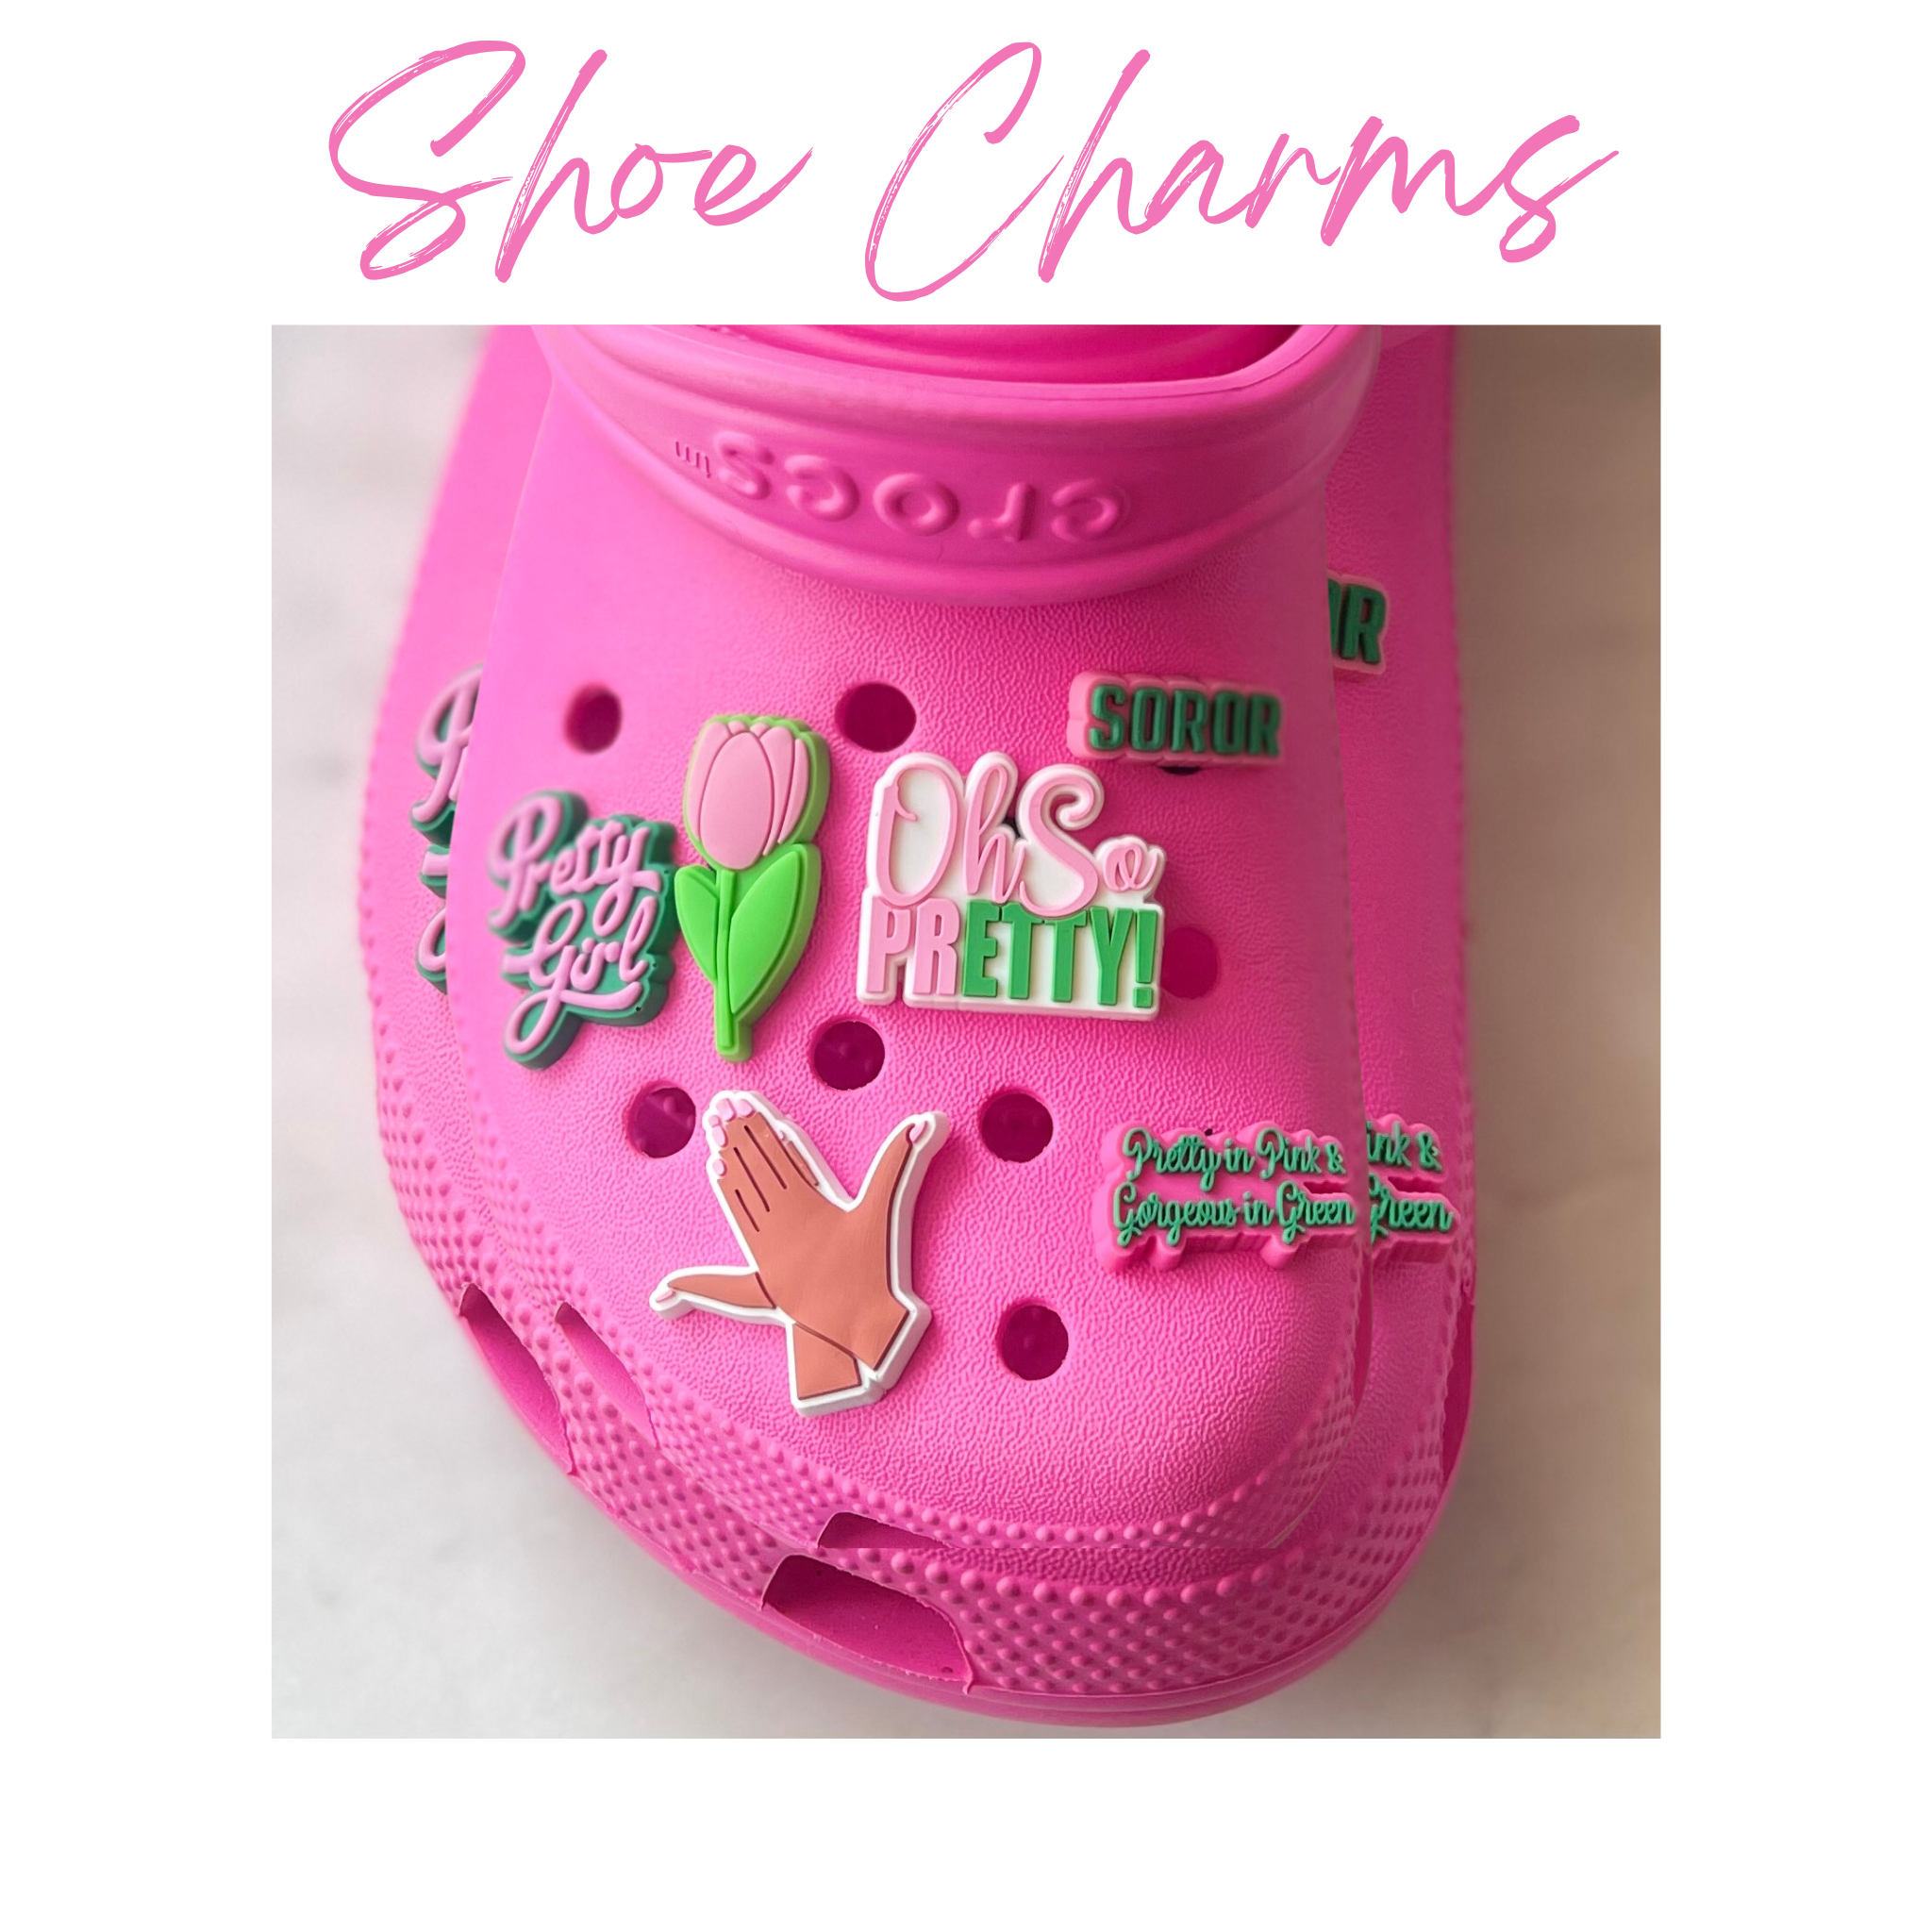 AKA Shoe Charms